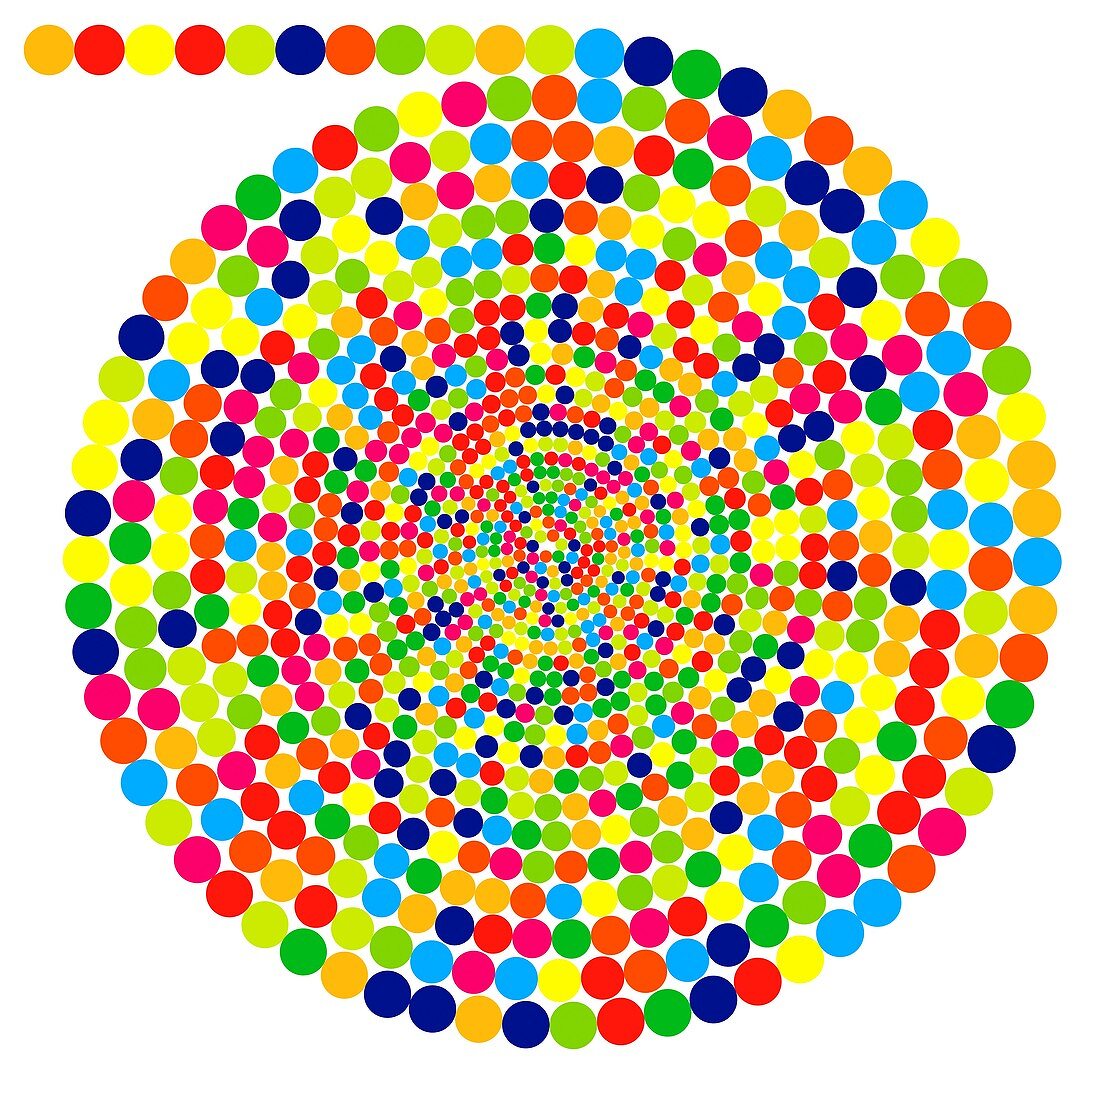 Pi number spiral representation, illustration